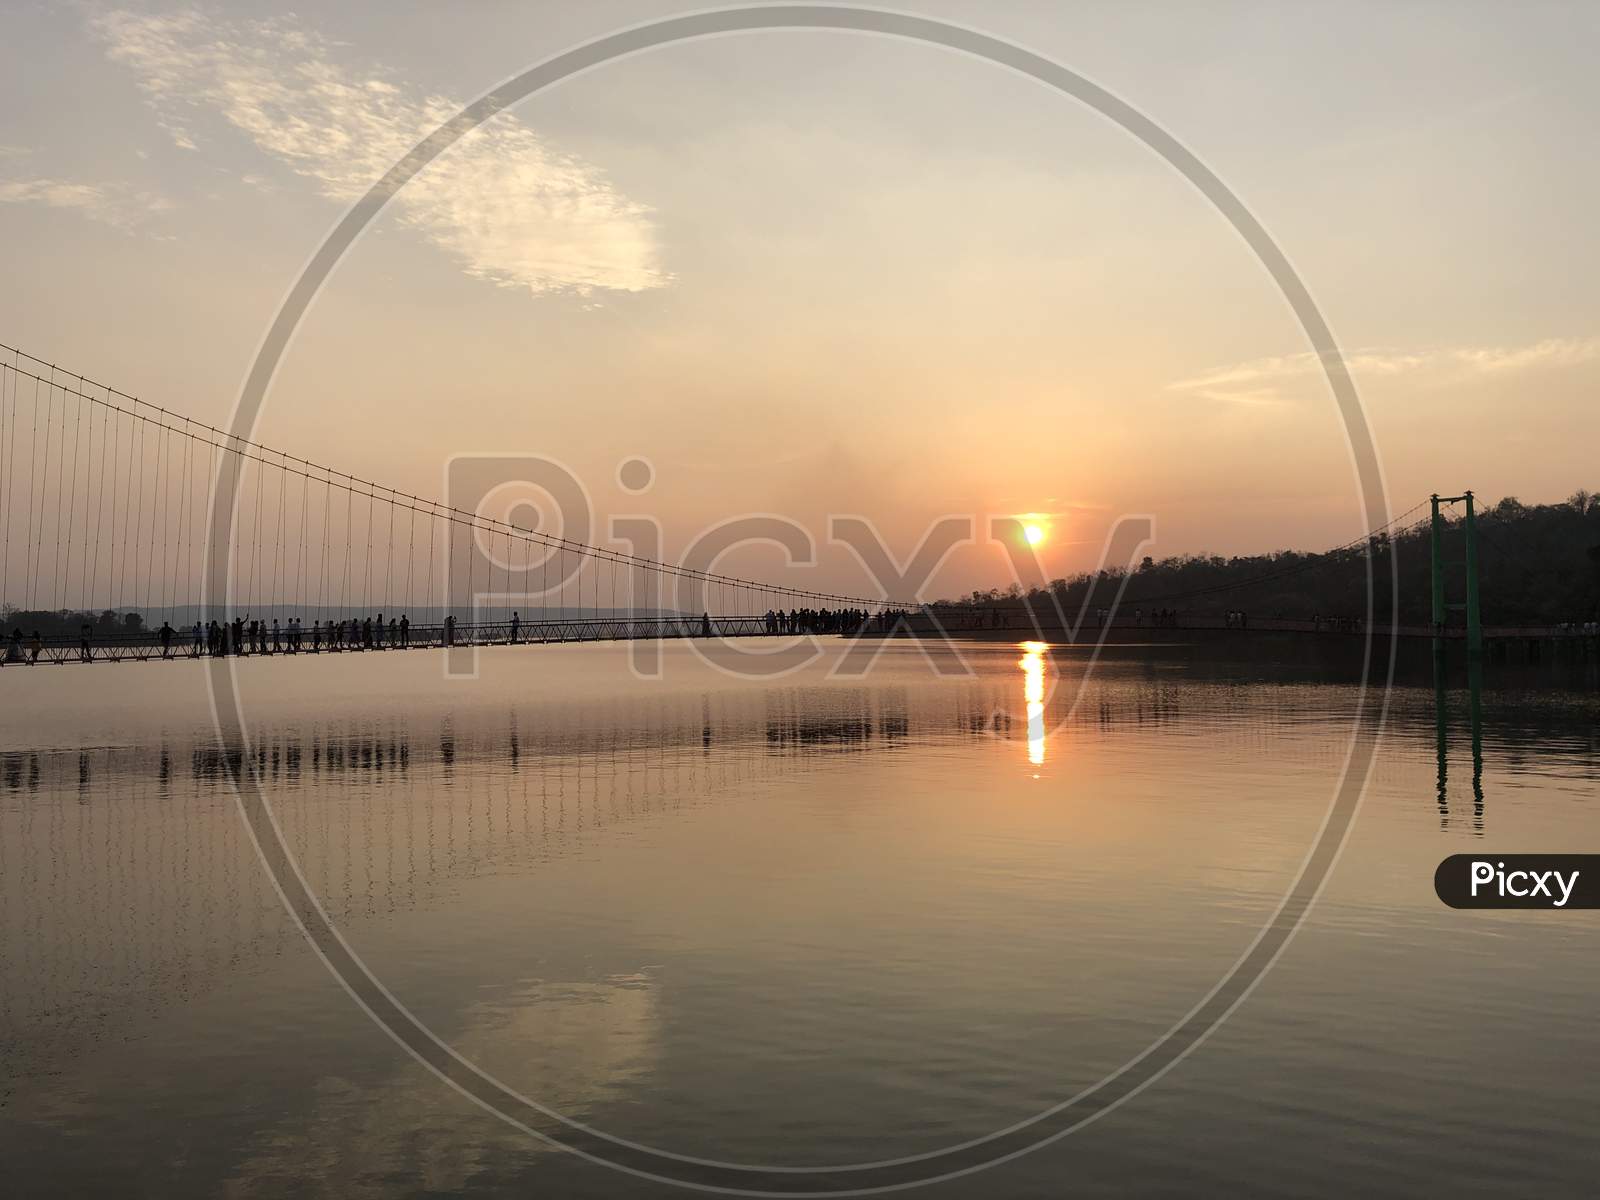 Sunset at Laknavara bridge